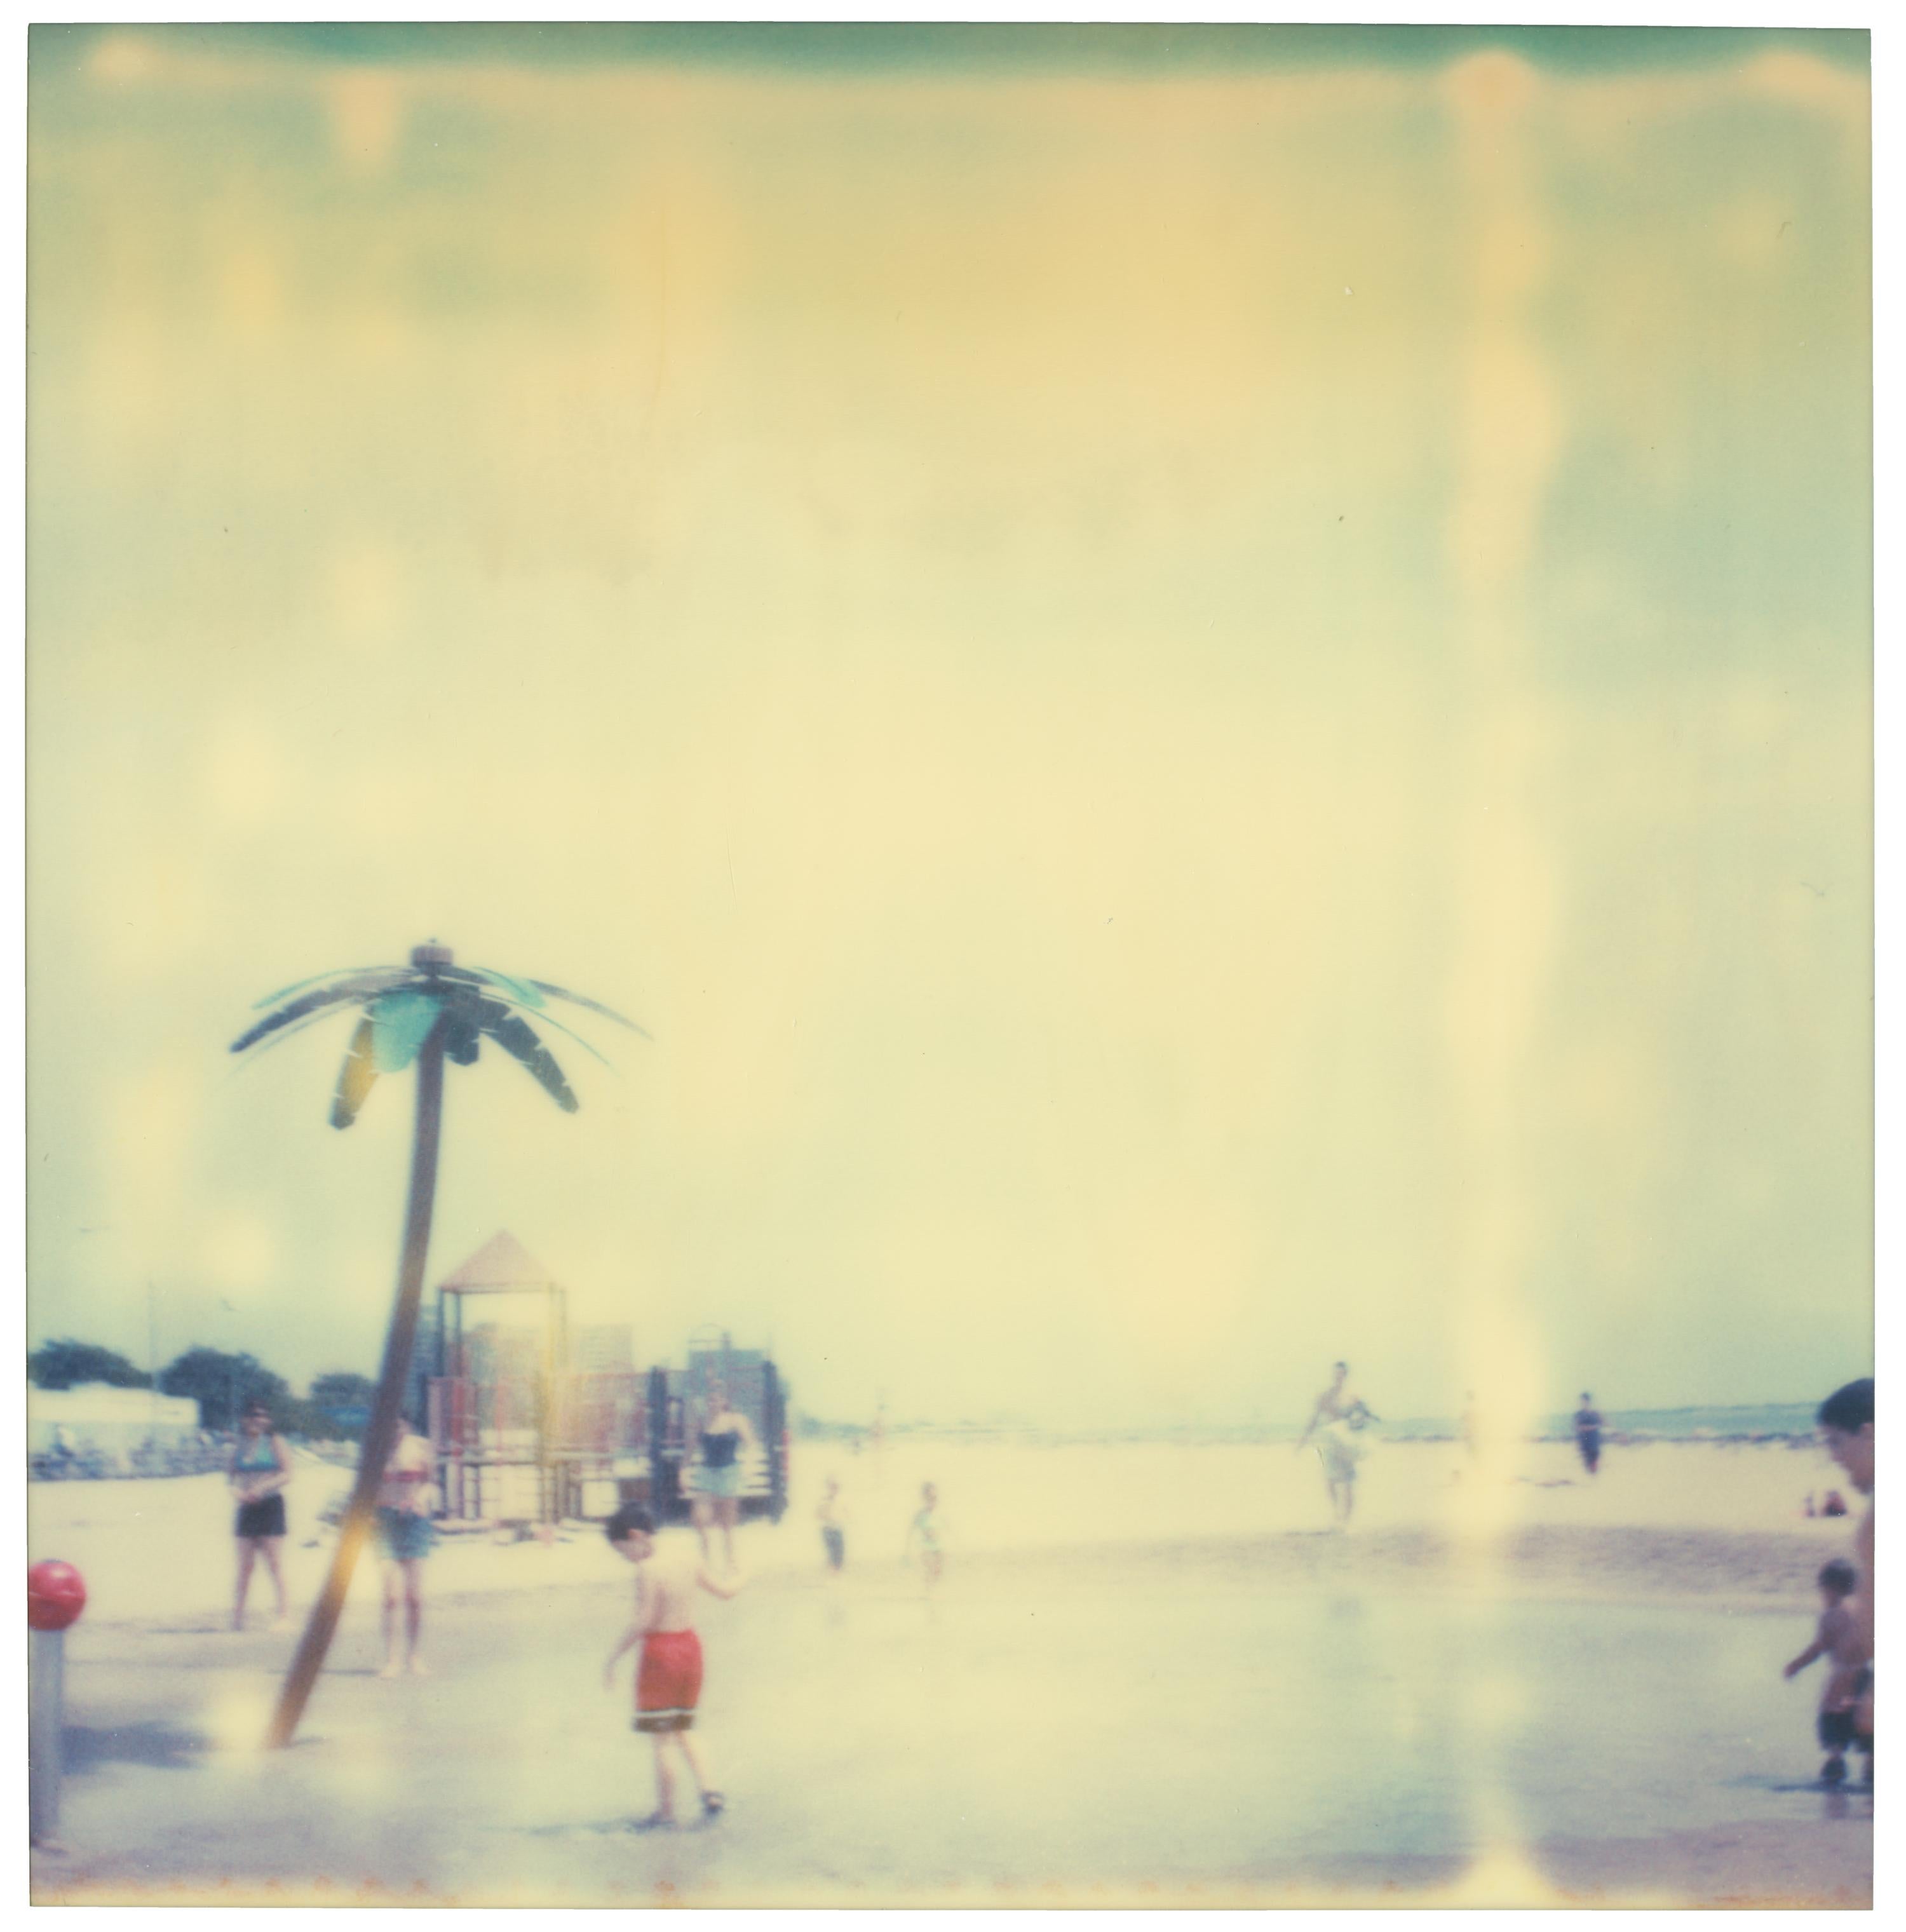 Stefanie Schneider Landscape Photograph – Coney Island Beach Life (Aufenthalt) - Polaroid, 21. Jahrhundert, Contemporary, Farbe